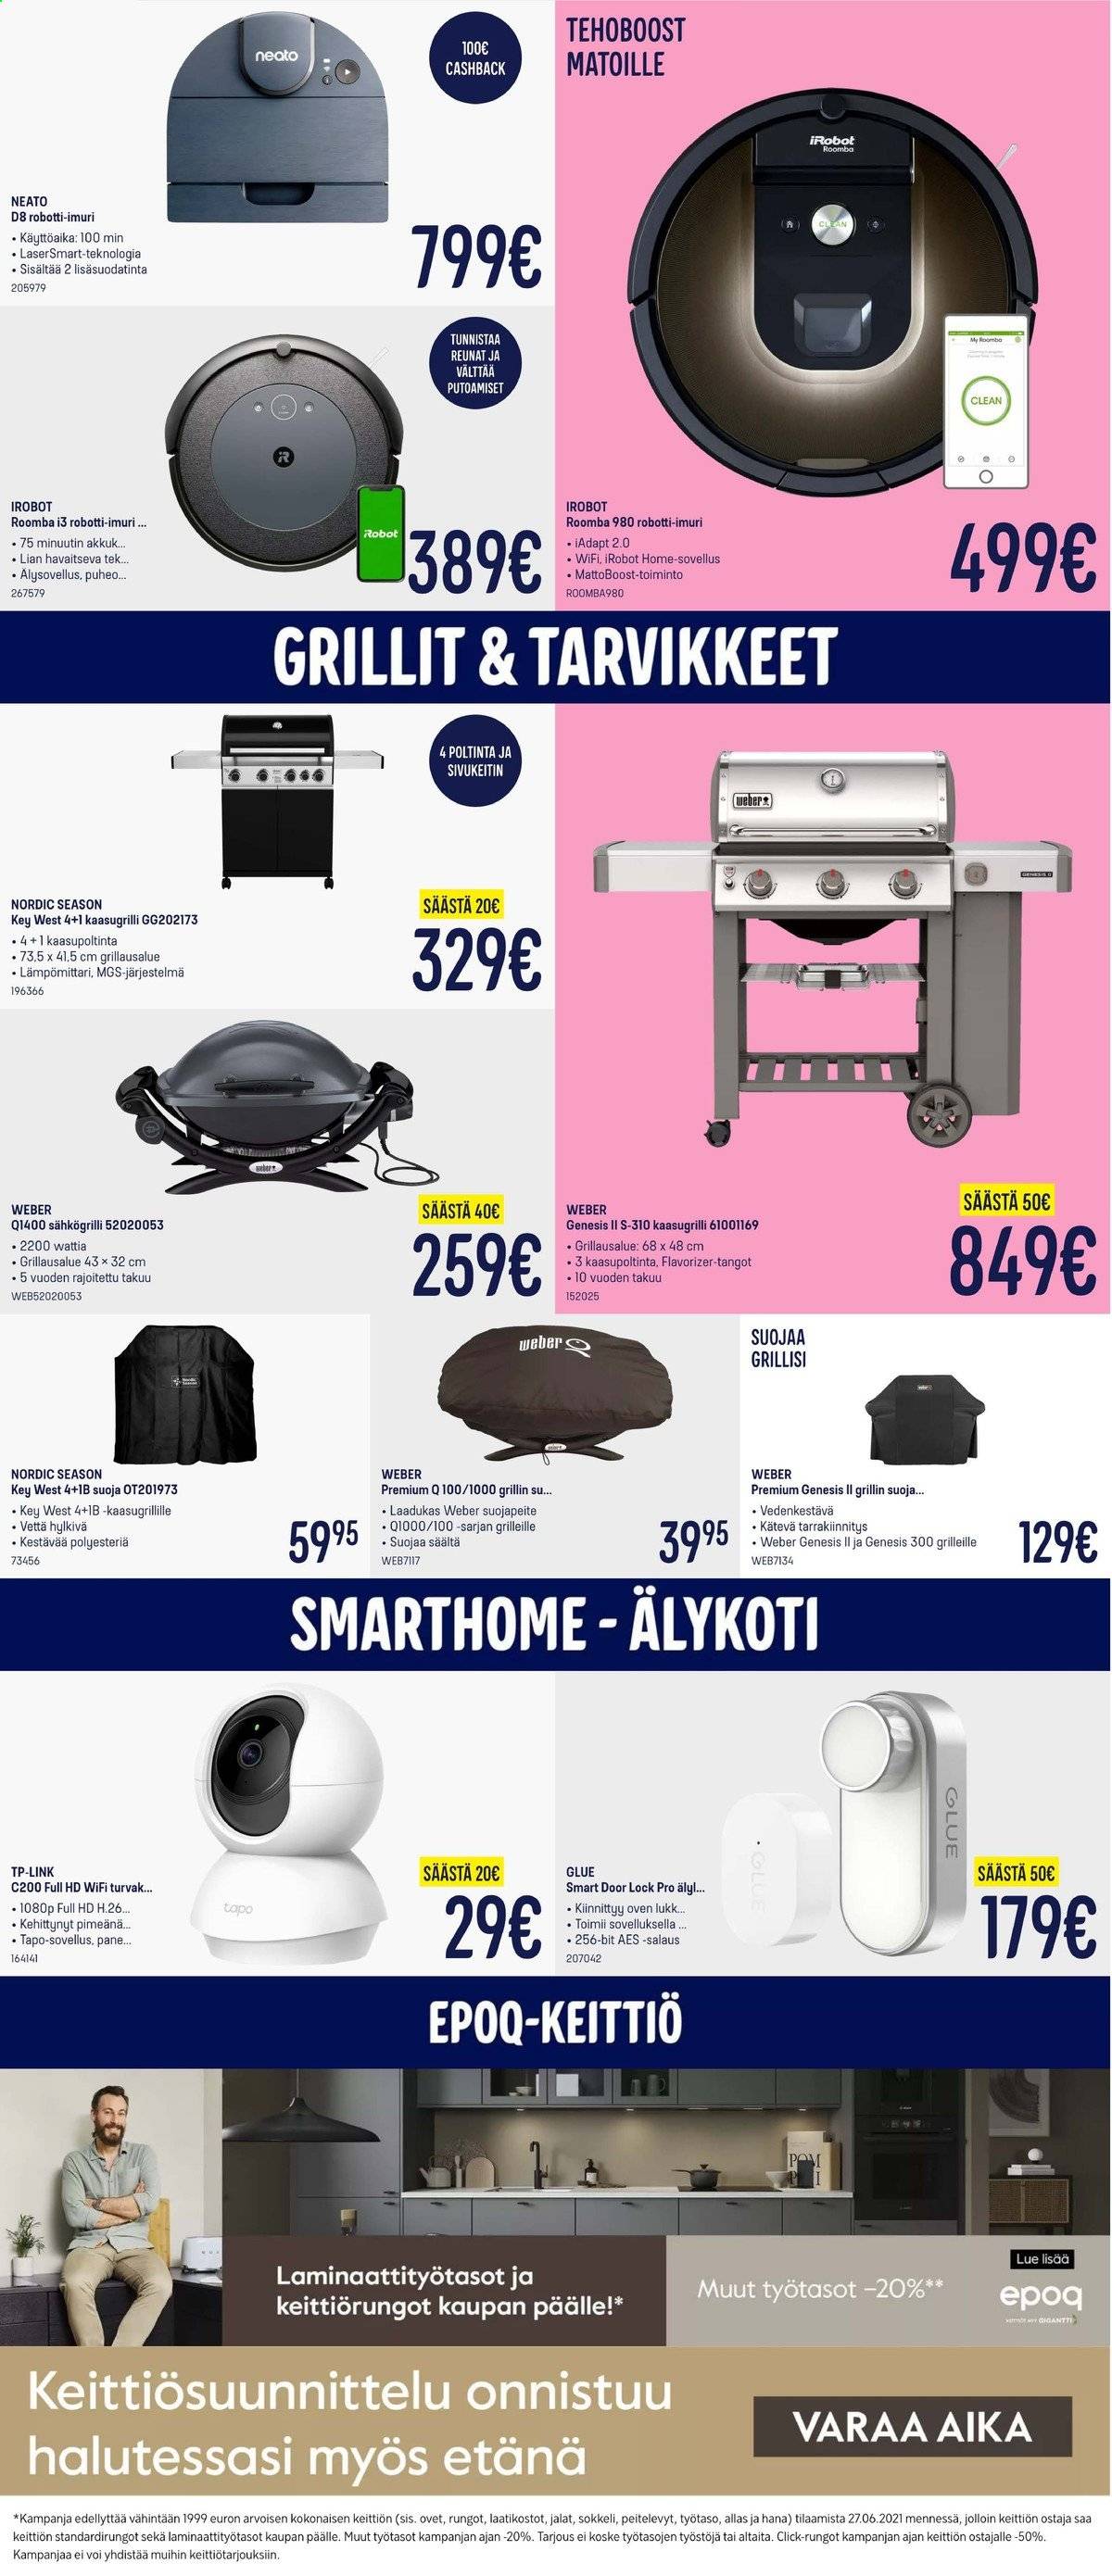 thumbnail - Gigantti tarjoukset  - 07.06.2021 - 13.06.2021 - Tarjoustuotteet - iRobot, robotti-imuri, Roomba, imuri, sähkögrilli, työtaso. Sivu 21.